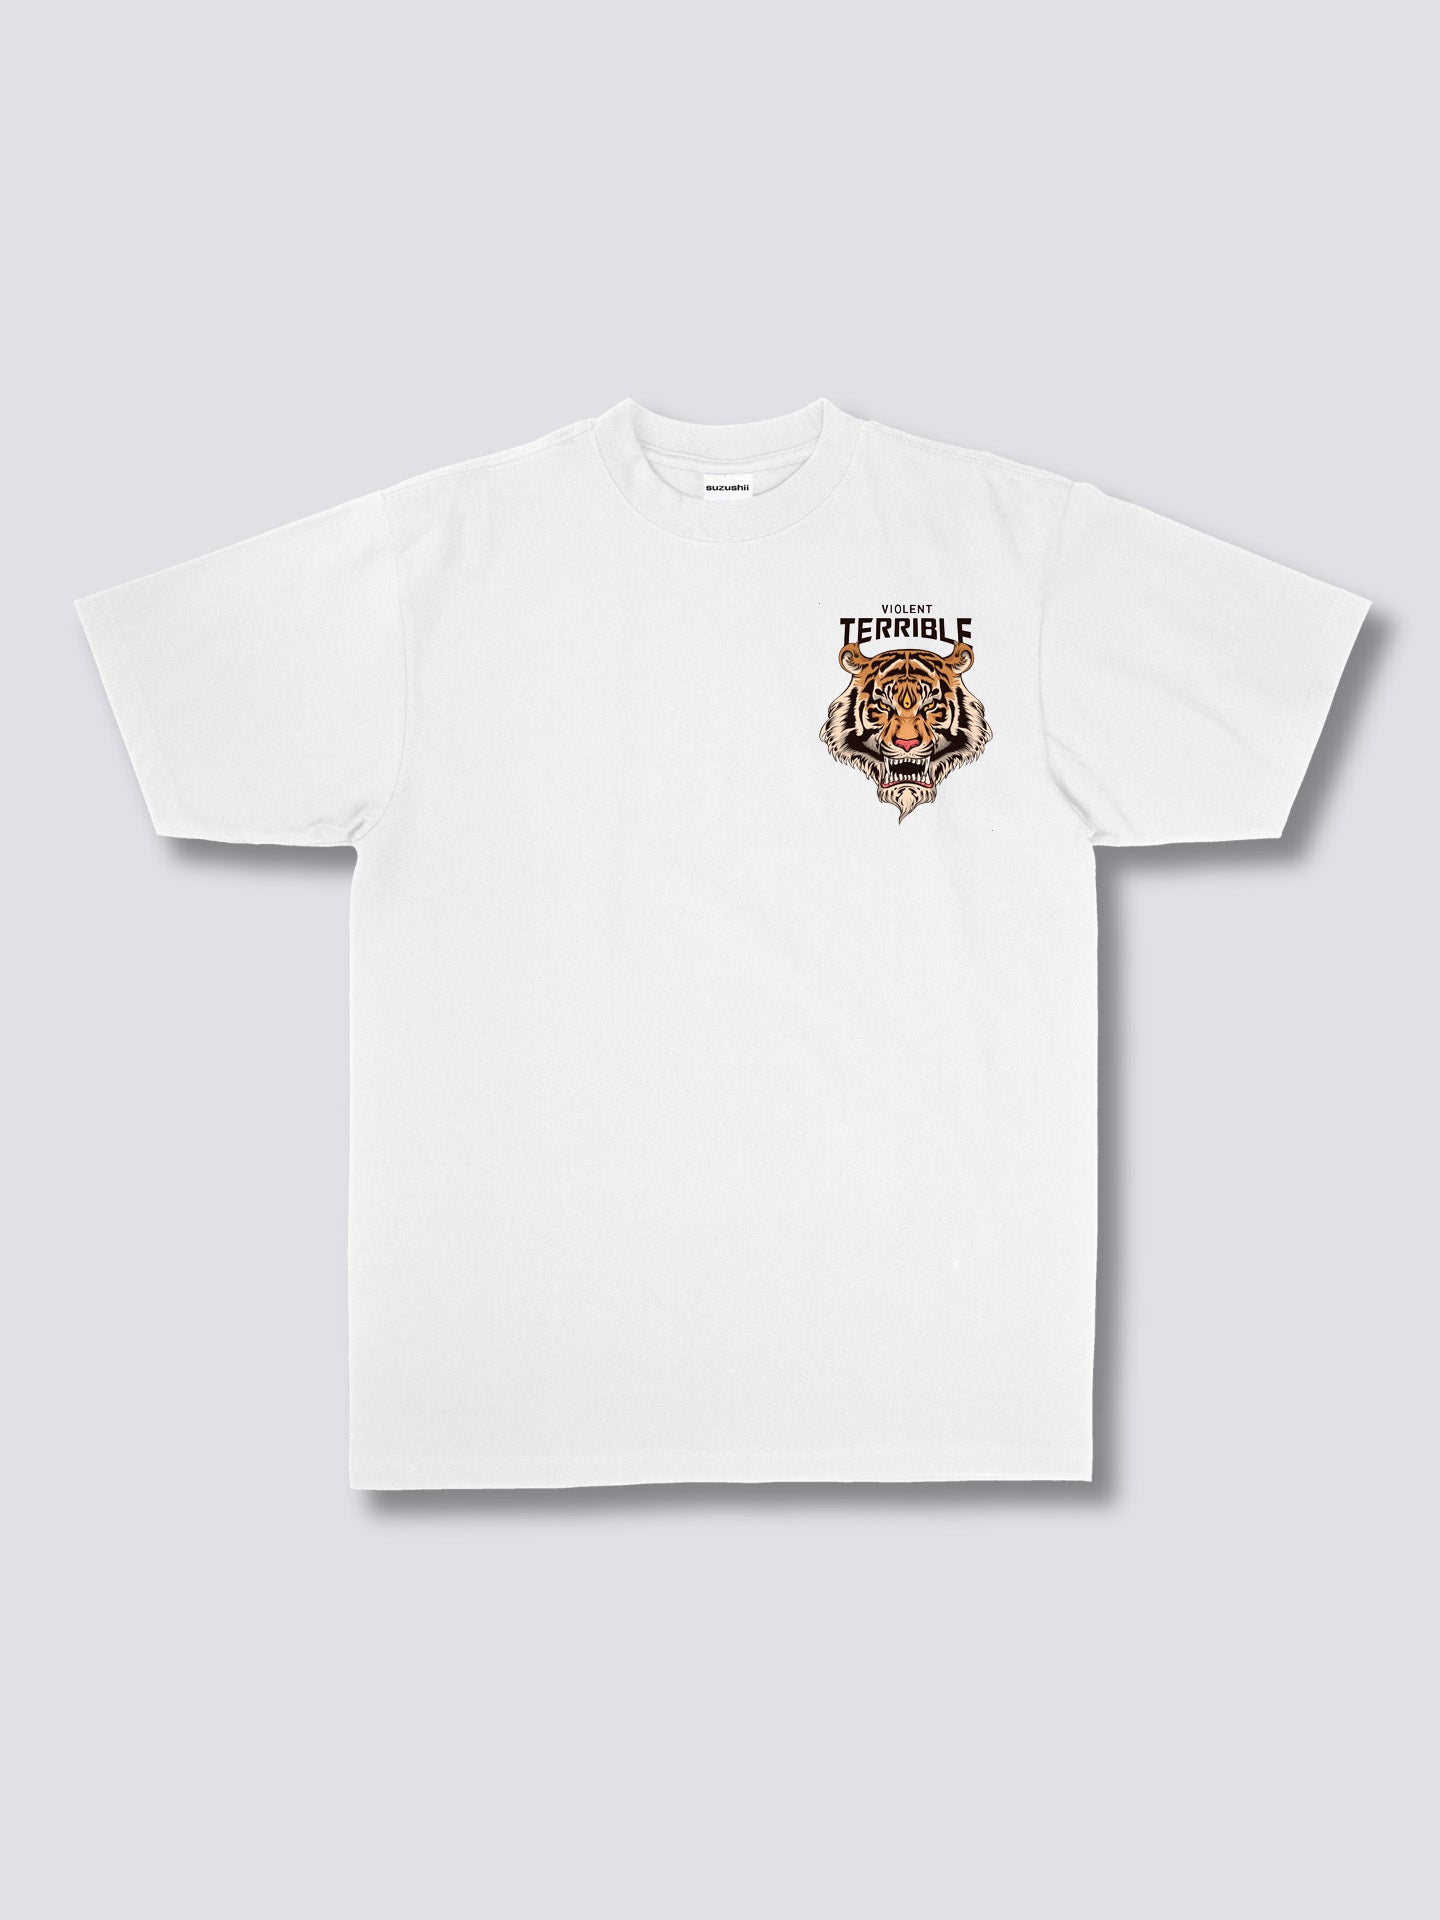 Violent Tiger T-Shirt